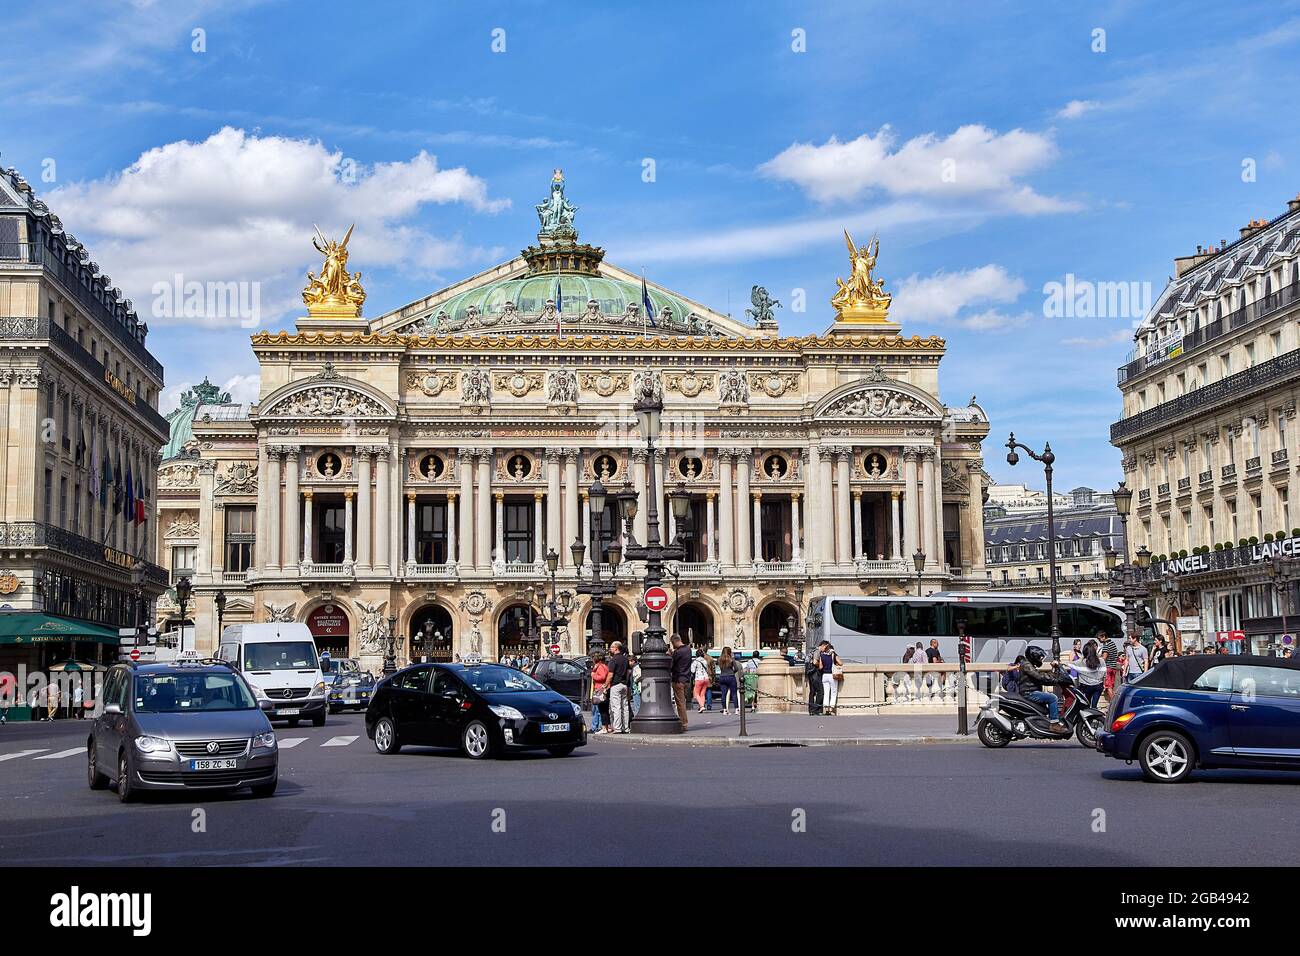 Blick auf den Place de l'Opera und die Opéra de Paris. Die Grand Opera (Garnier Palace) ist ein berühmtes neobarockes Gebäude in Paris. - Europa Stockfoto